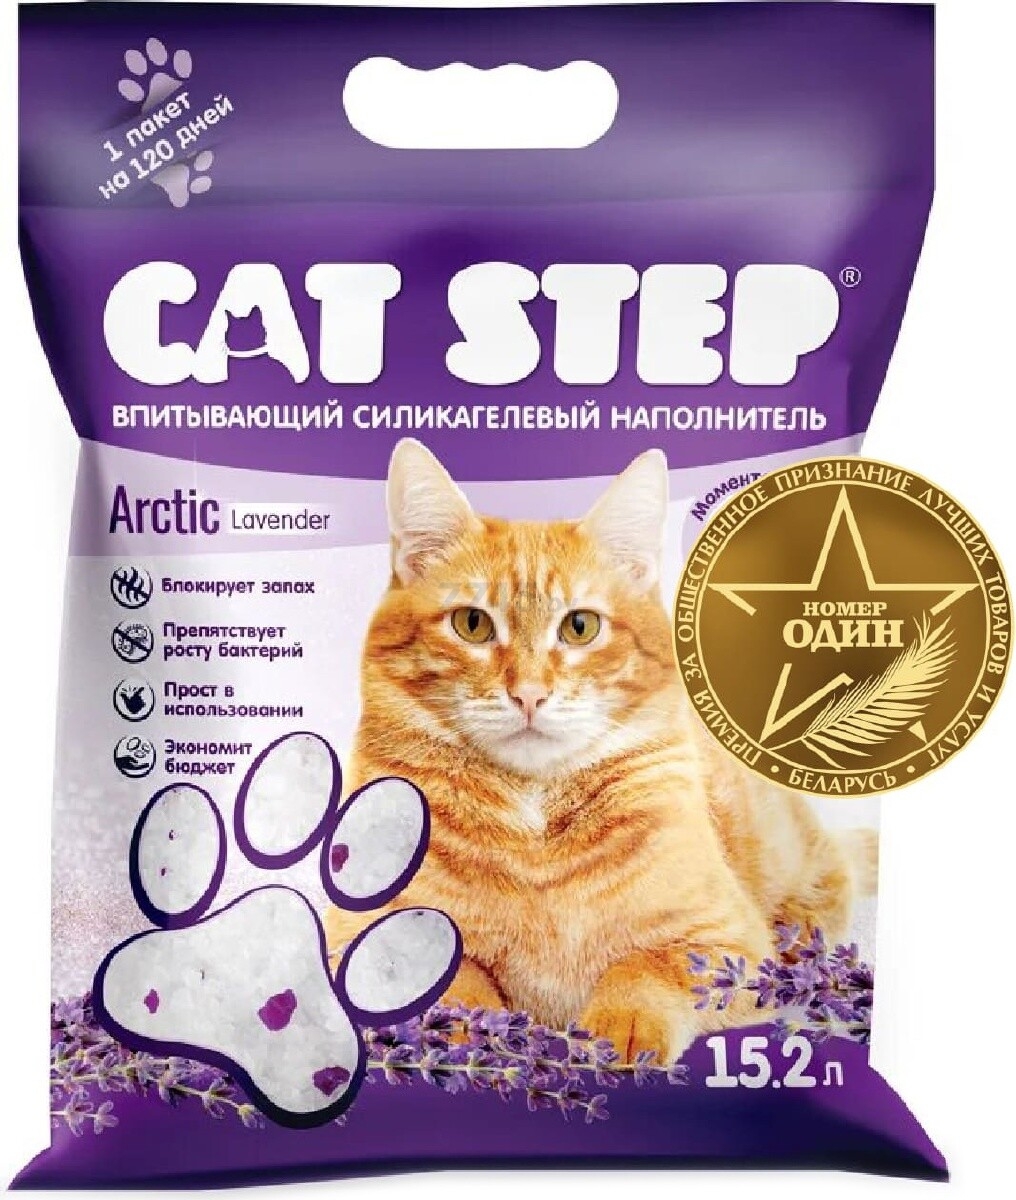 Наполнитель для туалета силикагелевый впитывающий CAT STEP Arctic Lavender 15,2 л, 6,68 кг (20363017)